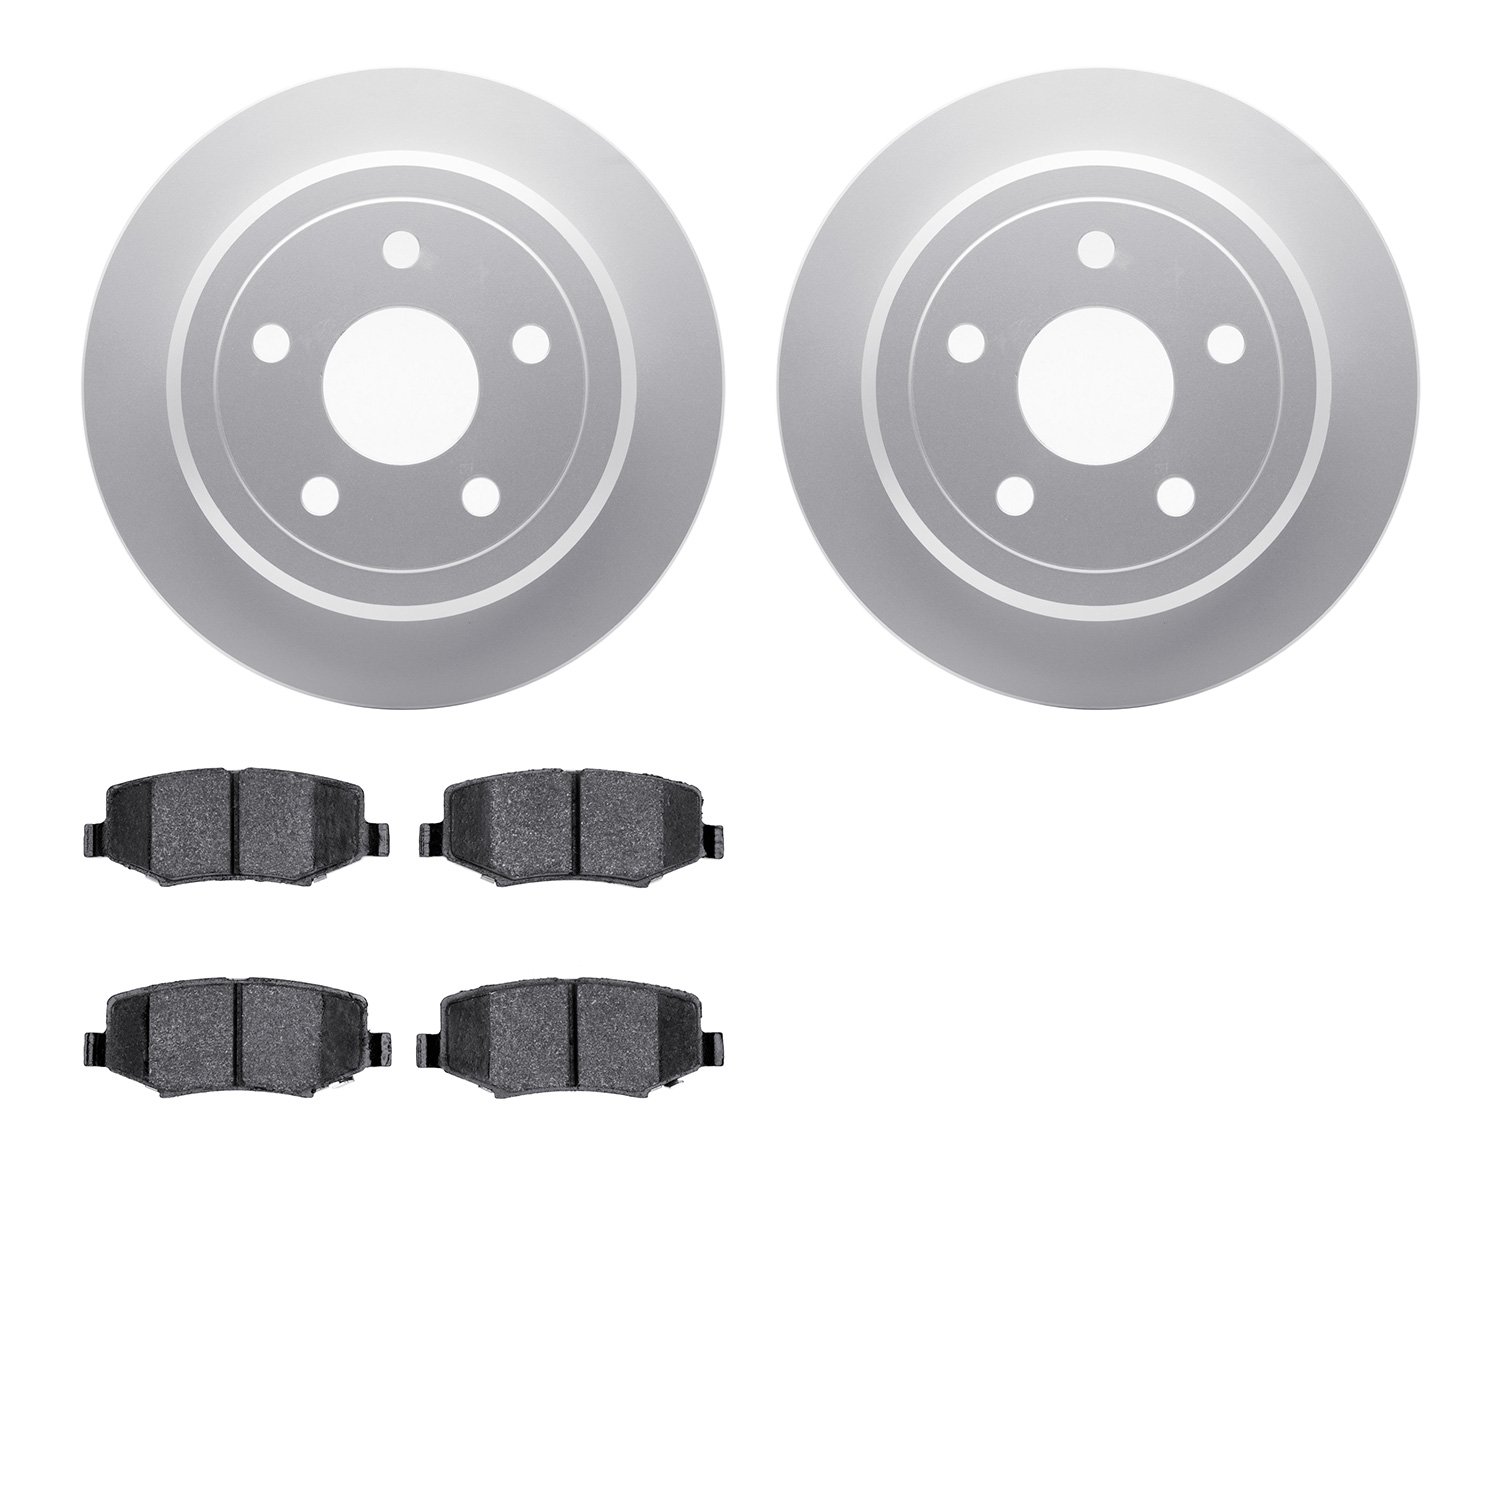 4402-42027 Geospec Brake Rotors with Ultimate-Duty Brake Pads Kit, 2007-2018 Mopar, Position: Rear